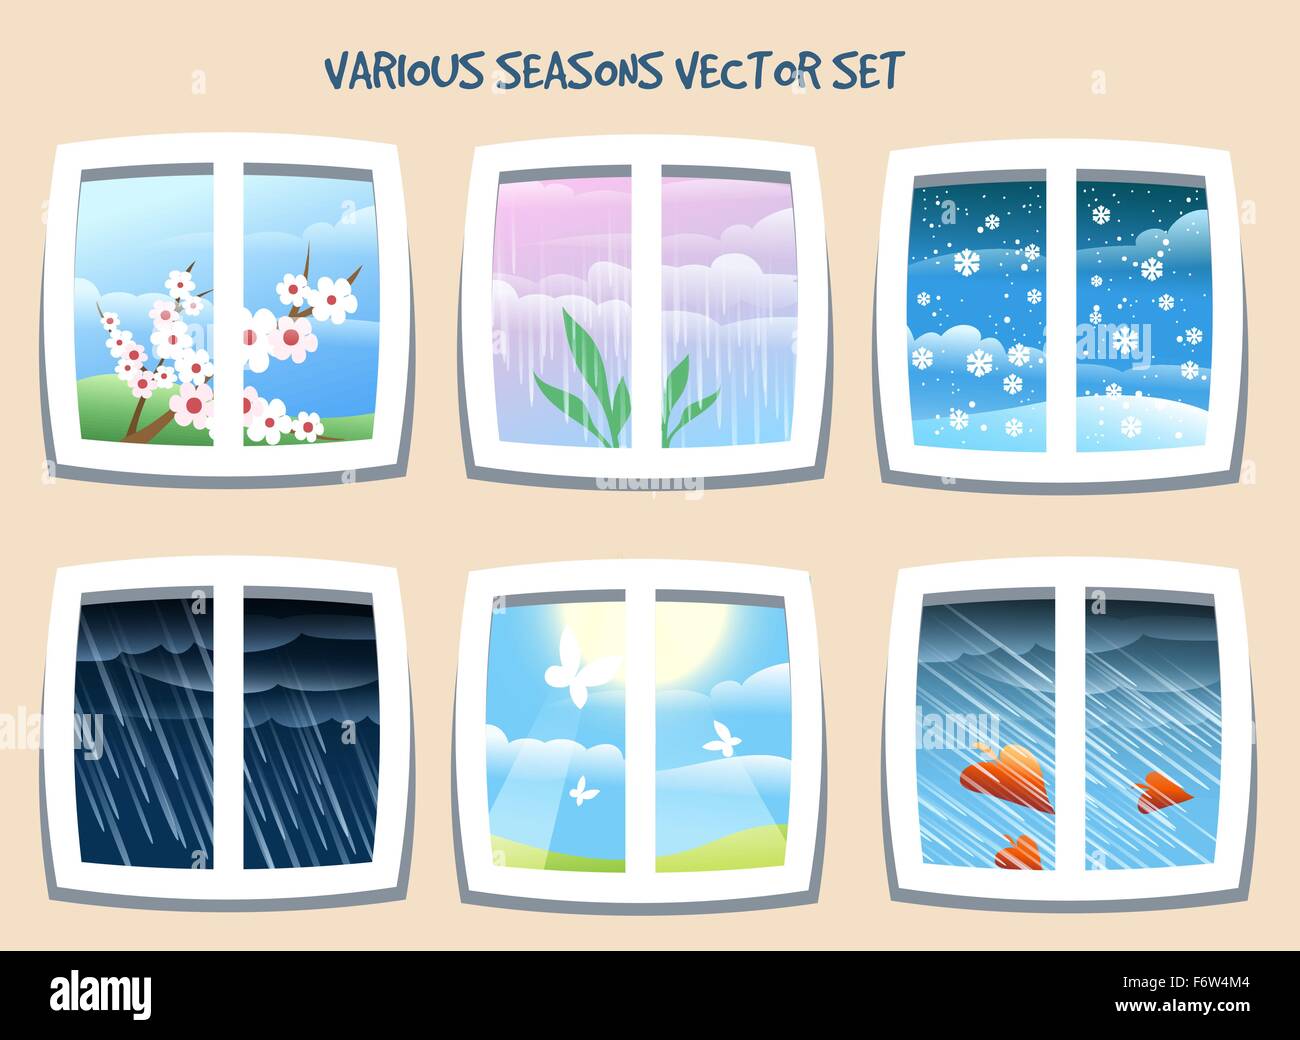 Divers phénomènes météorologiques ou saison set dessiné dans un style cartoon.vue depuis la fenêtre. Illustration de Vecteur